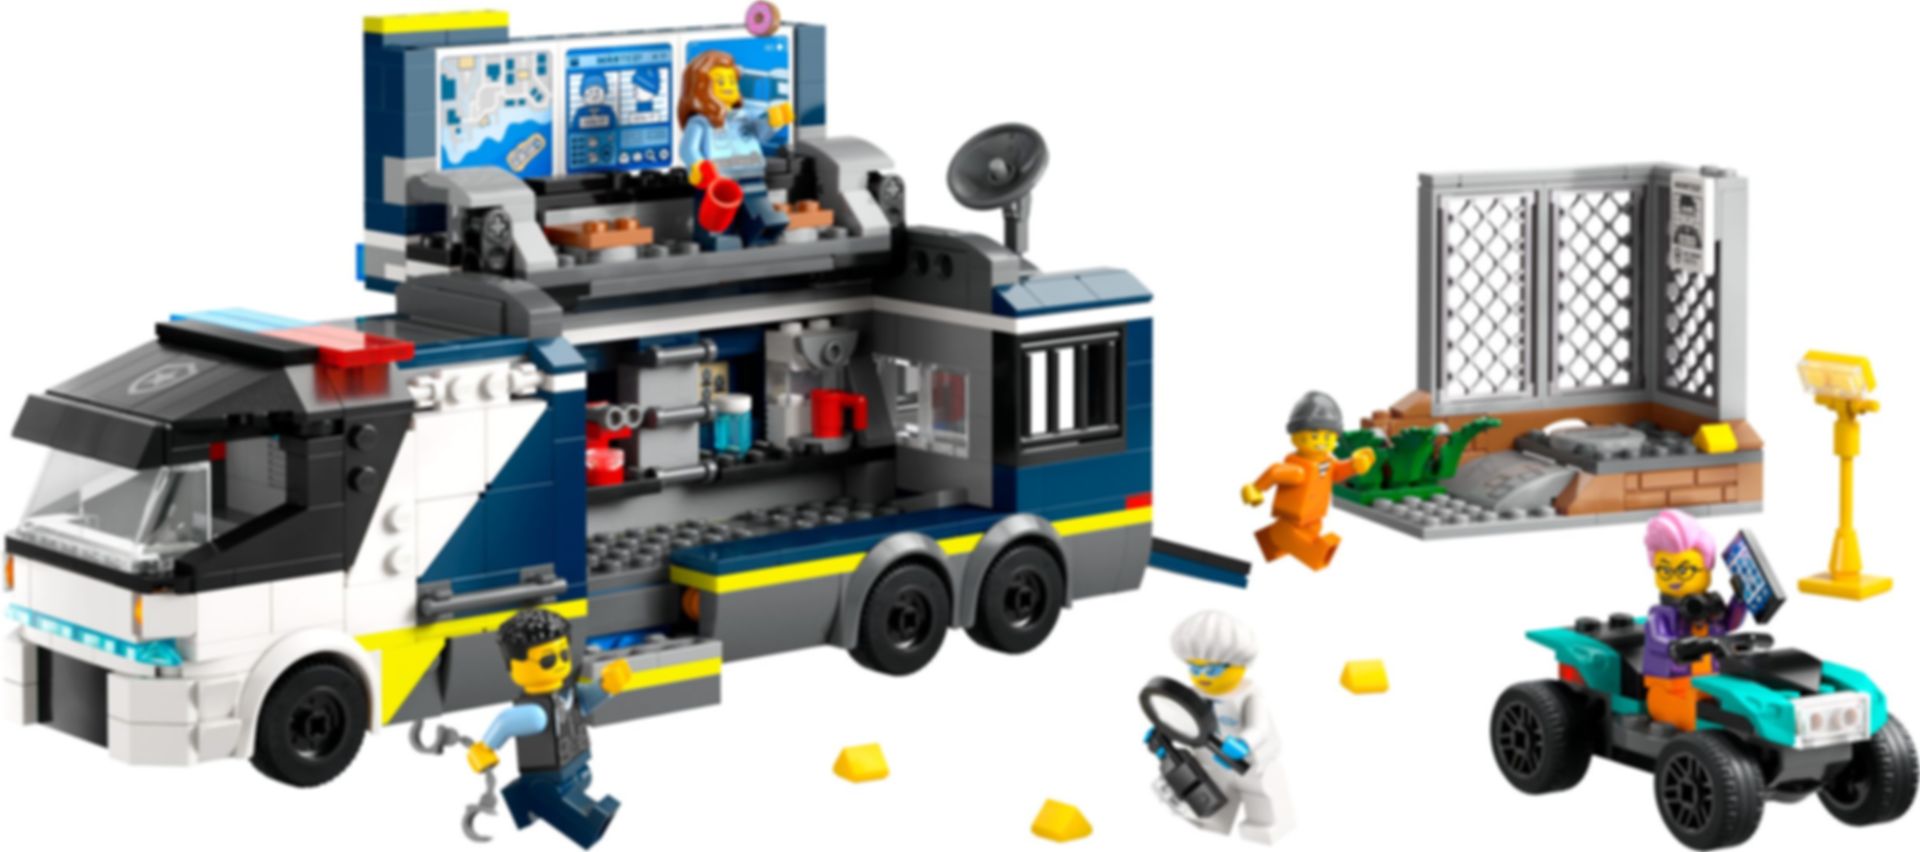 LEGO® City Polizeitruck mit Labor komponenten